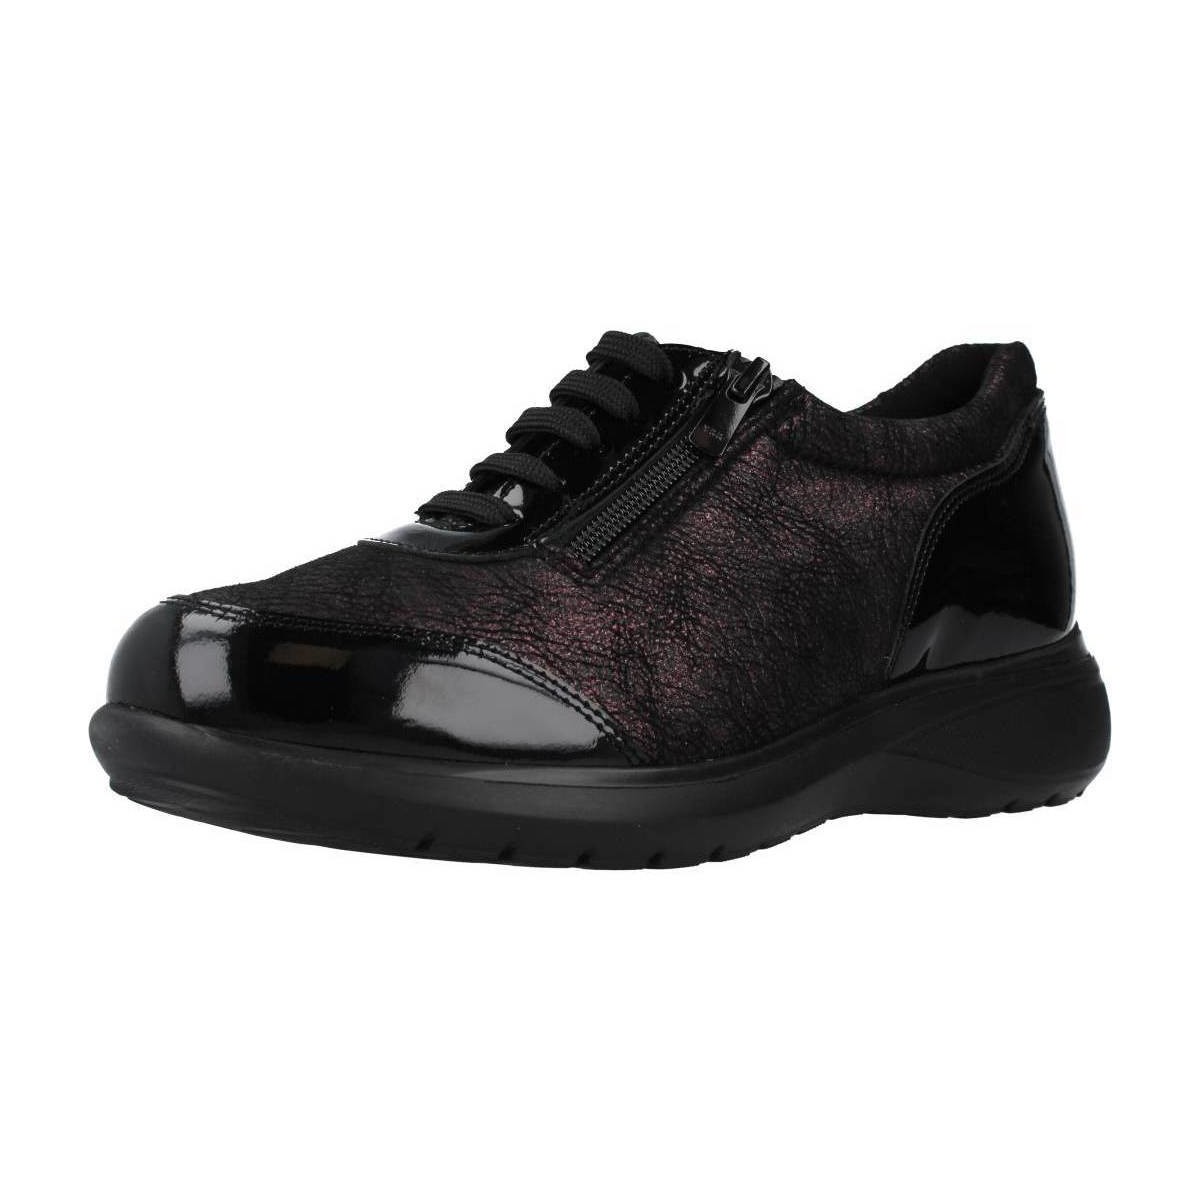 Chaussures Femme Baskets mode Pinoso's 8218G Noir